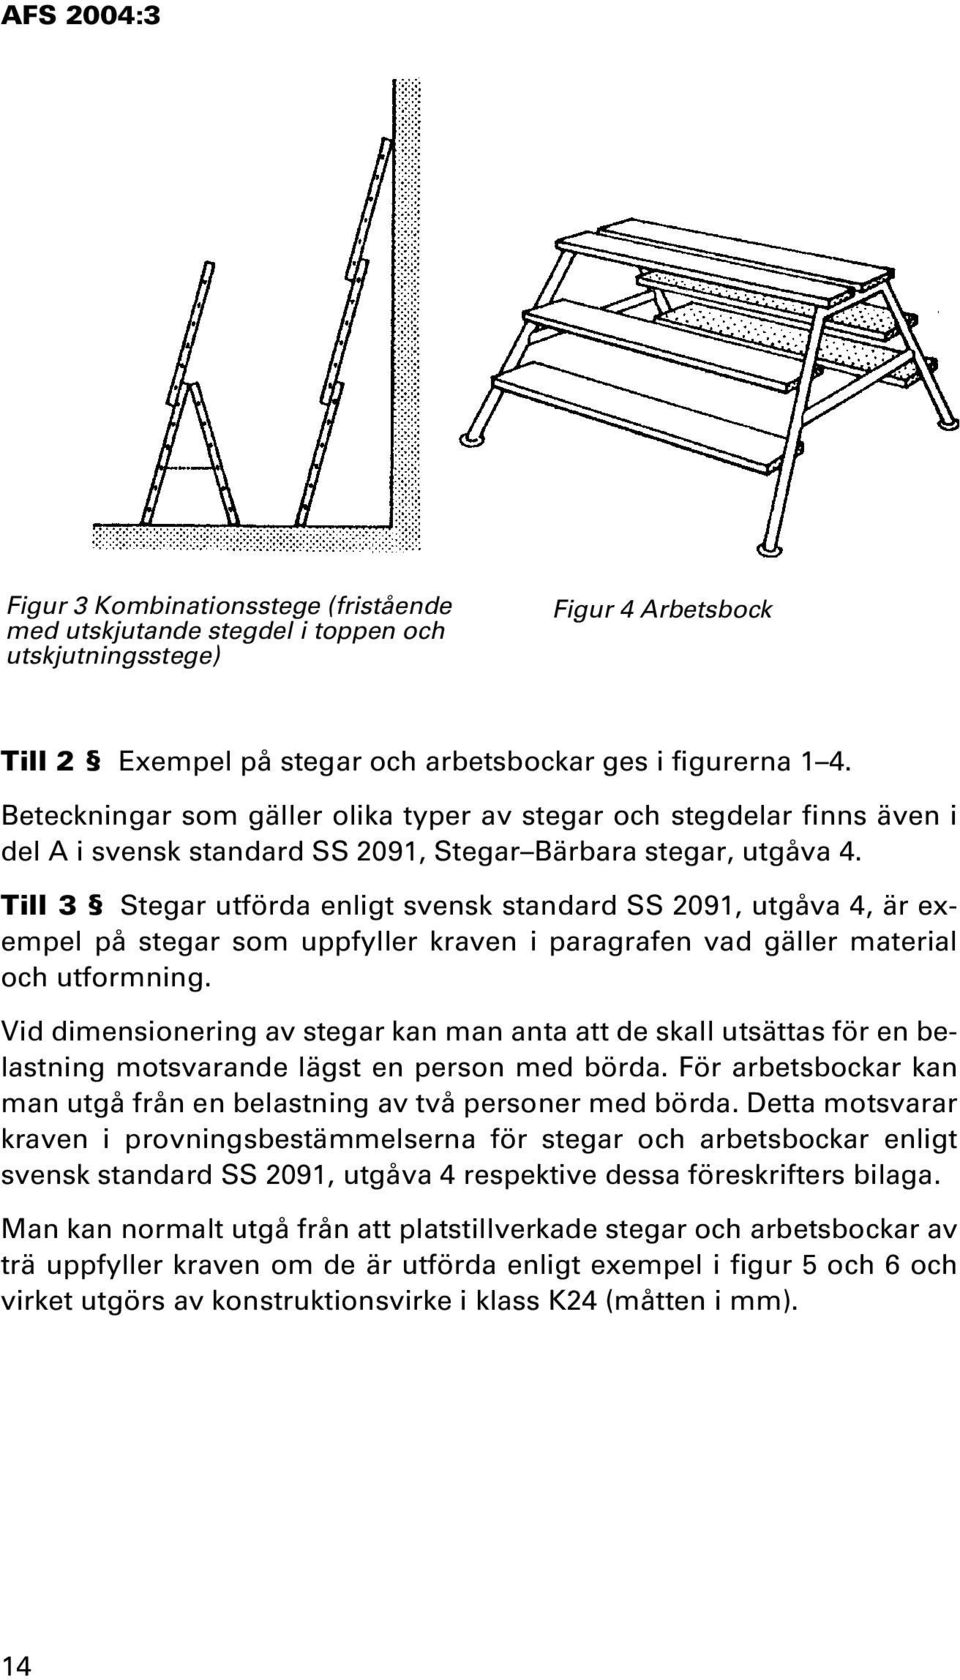 Till 3 Stegar utförda enligt svensk standard SS 2091, utgåva 4, är exempel på stegar som uppfyller kraven i paragrafen vad gäller material och utformning.